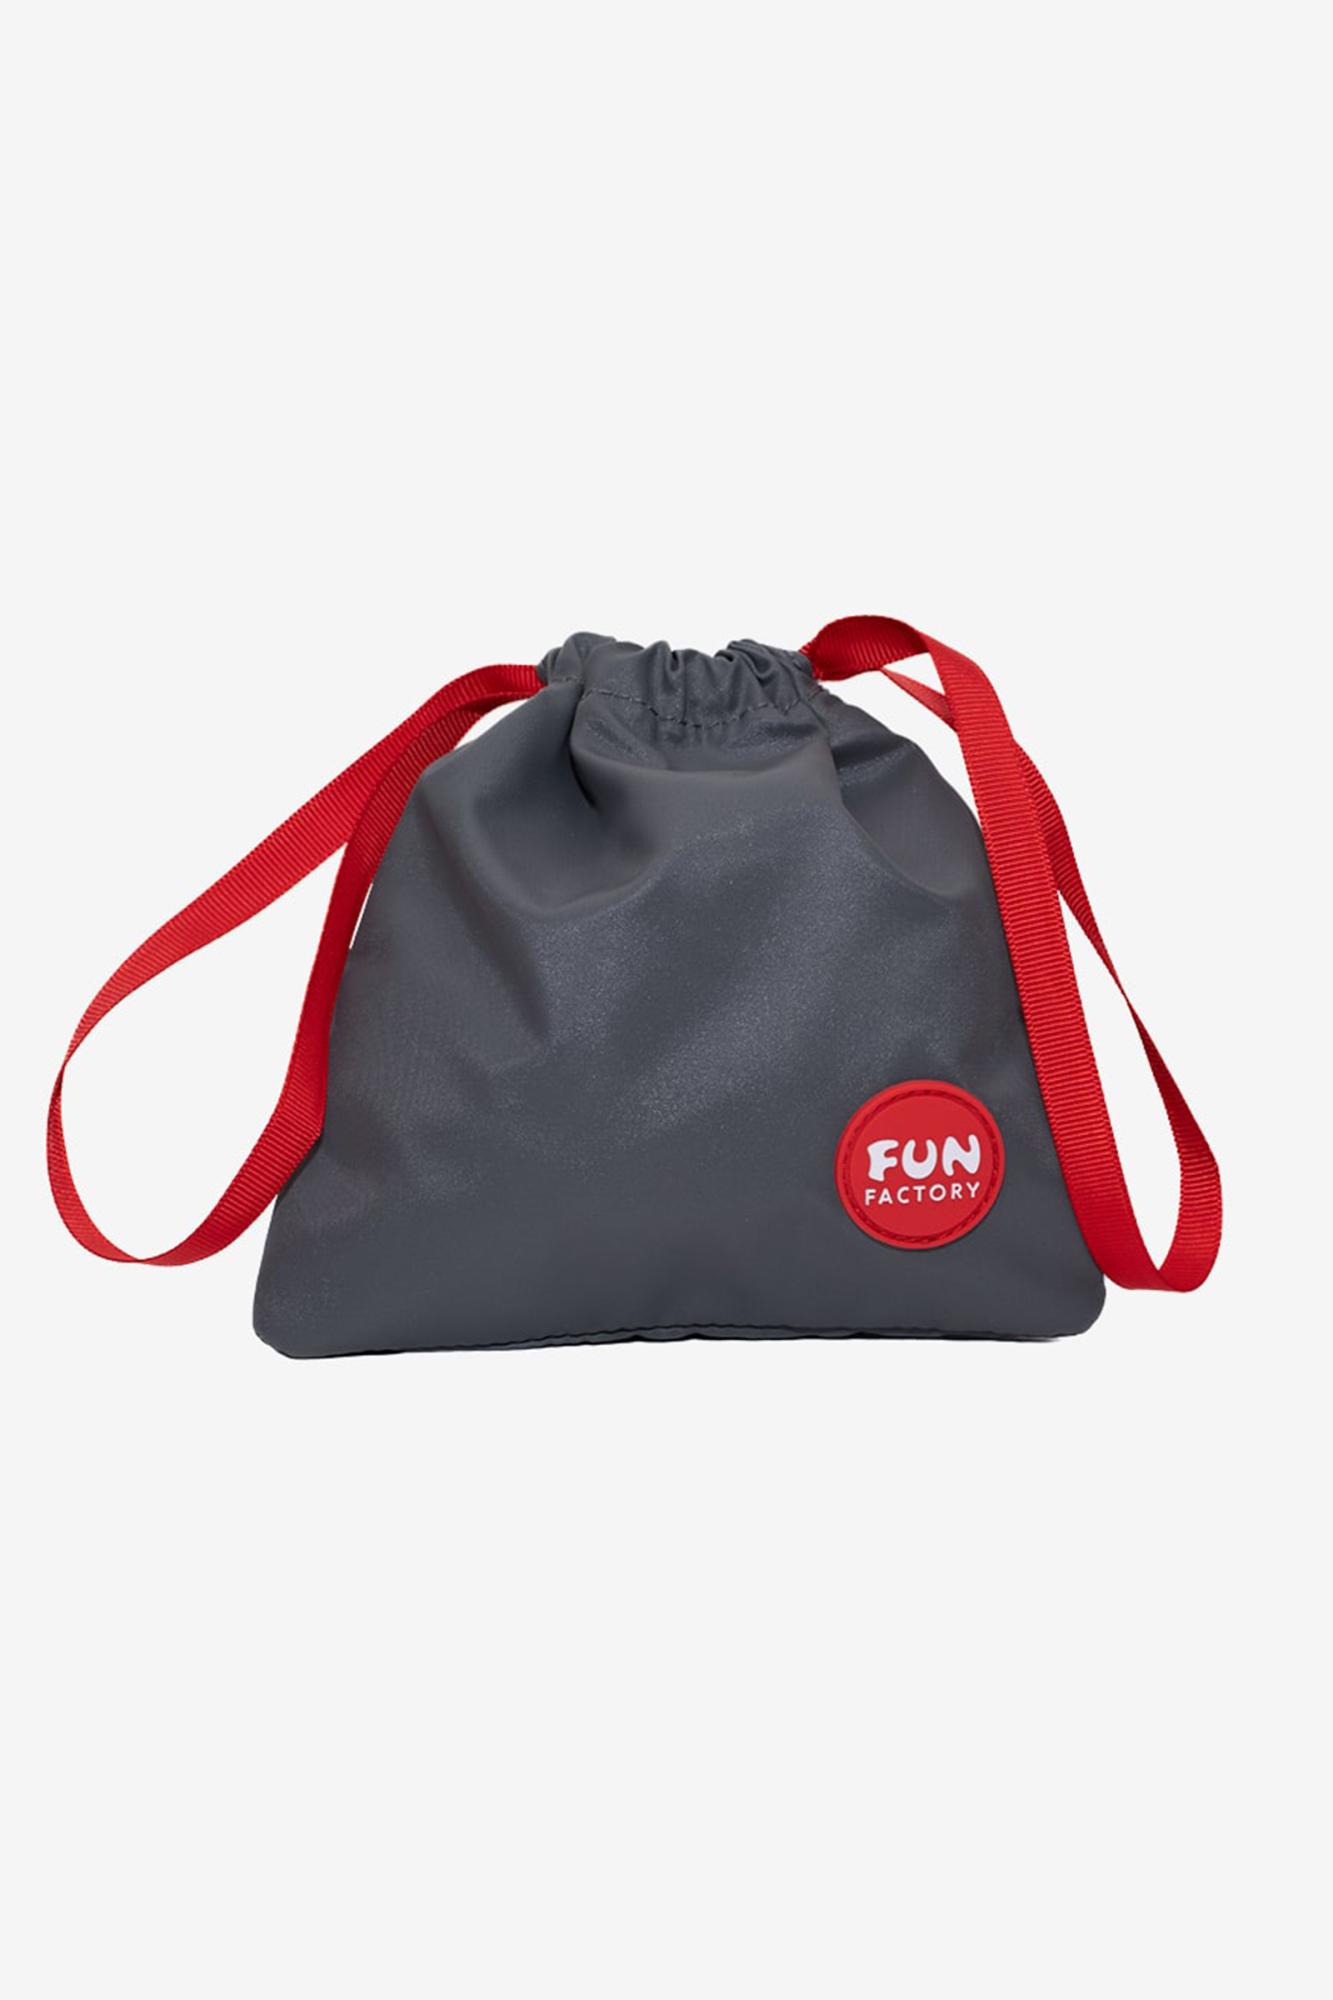 Fun Factory Toybag S - сумочка для хранения игрушек, 14х14 см